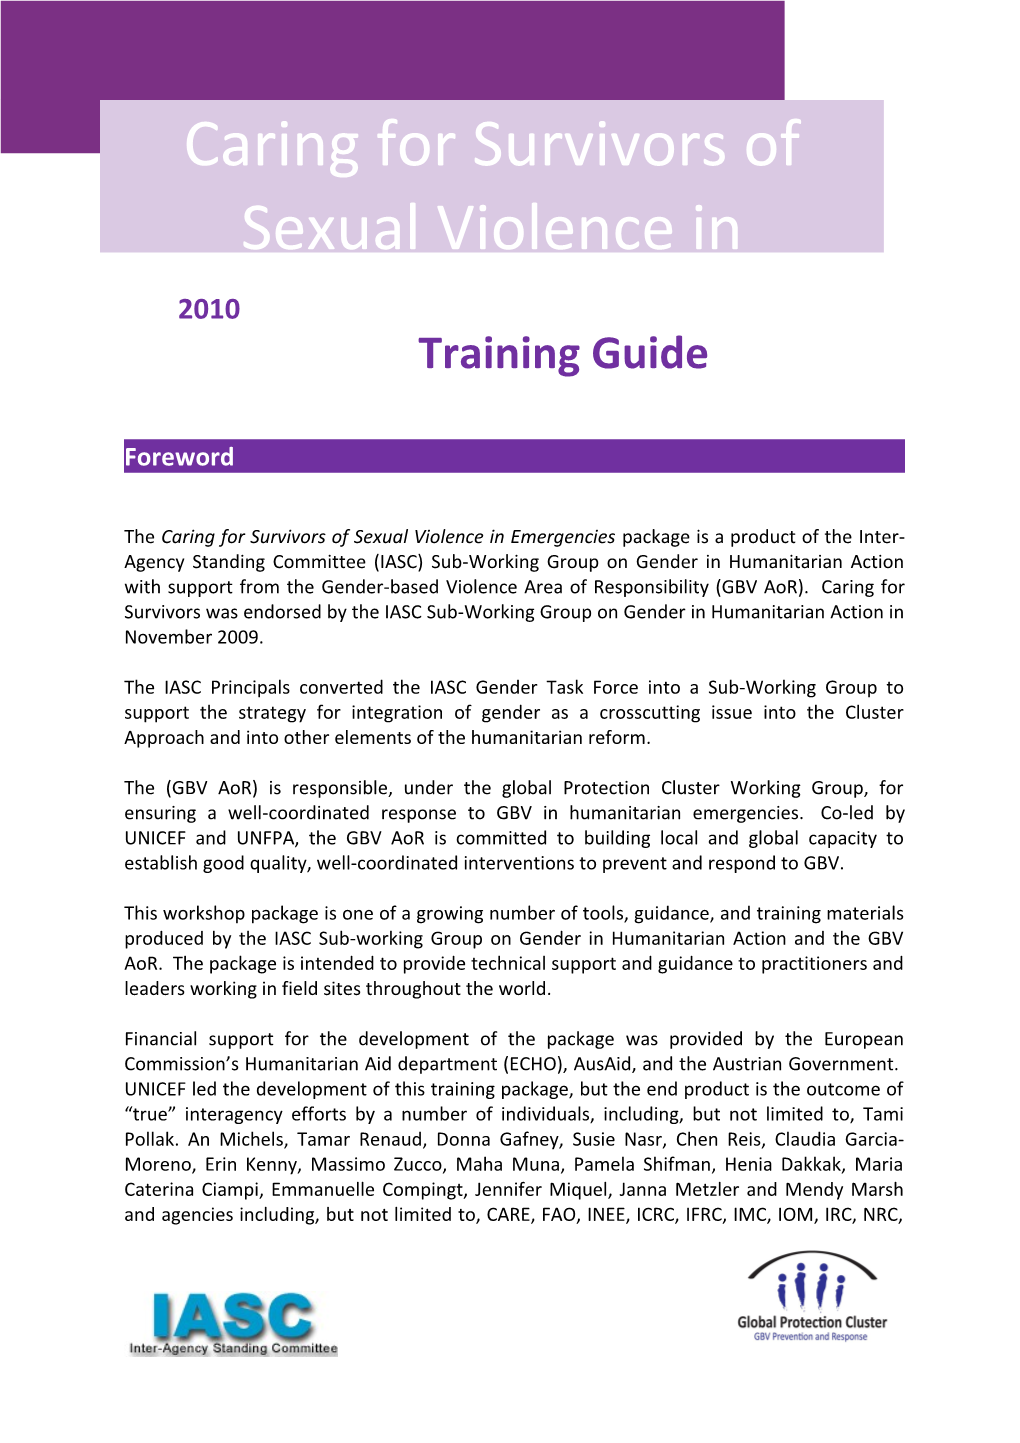 CFS Training Guide